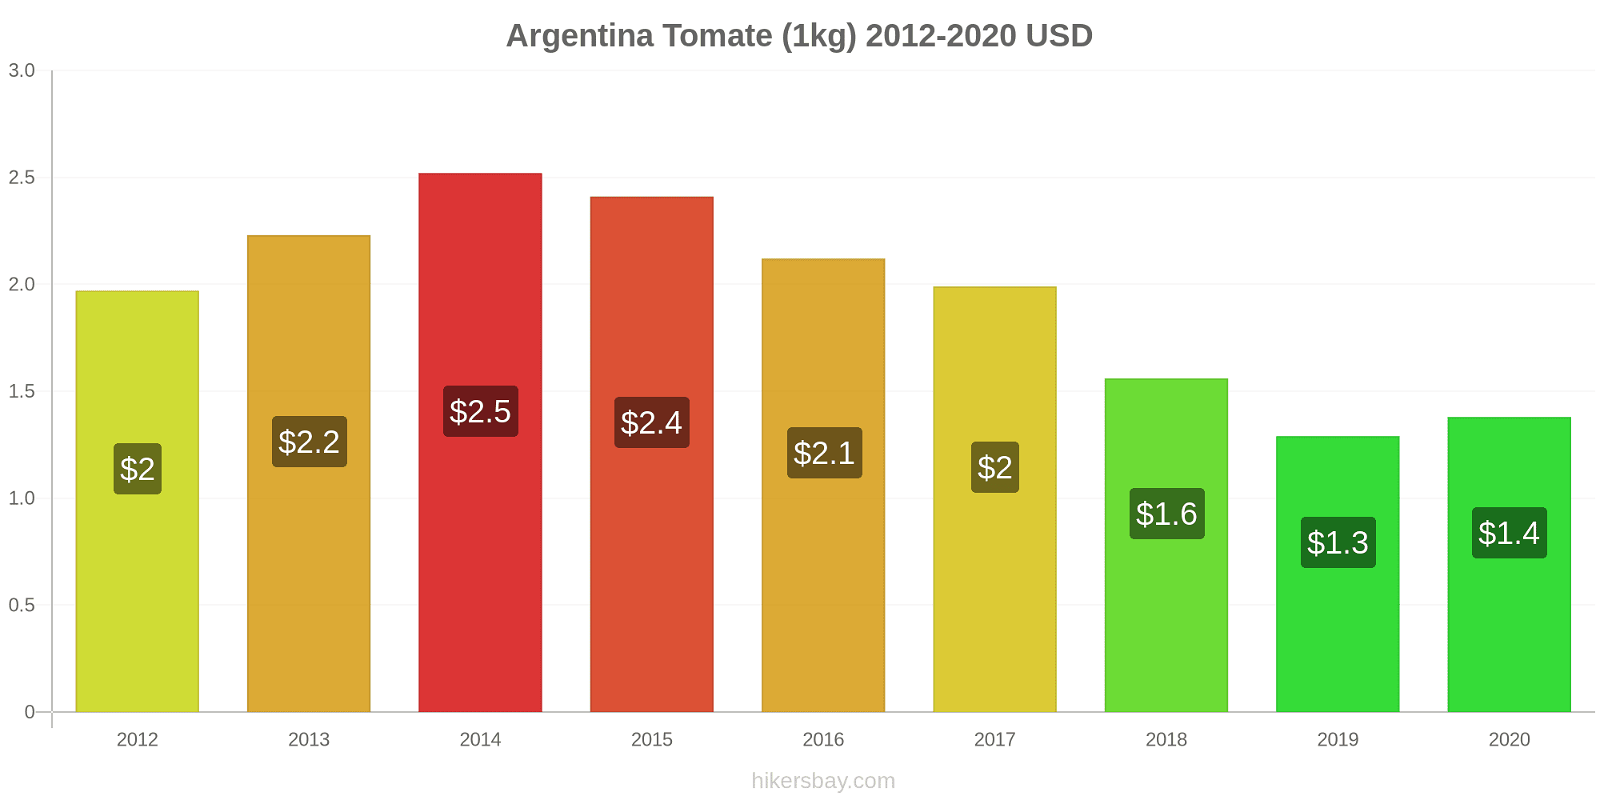 Argentina cambios de precios Tomate (1kg) hikersbay.com